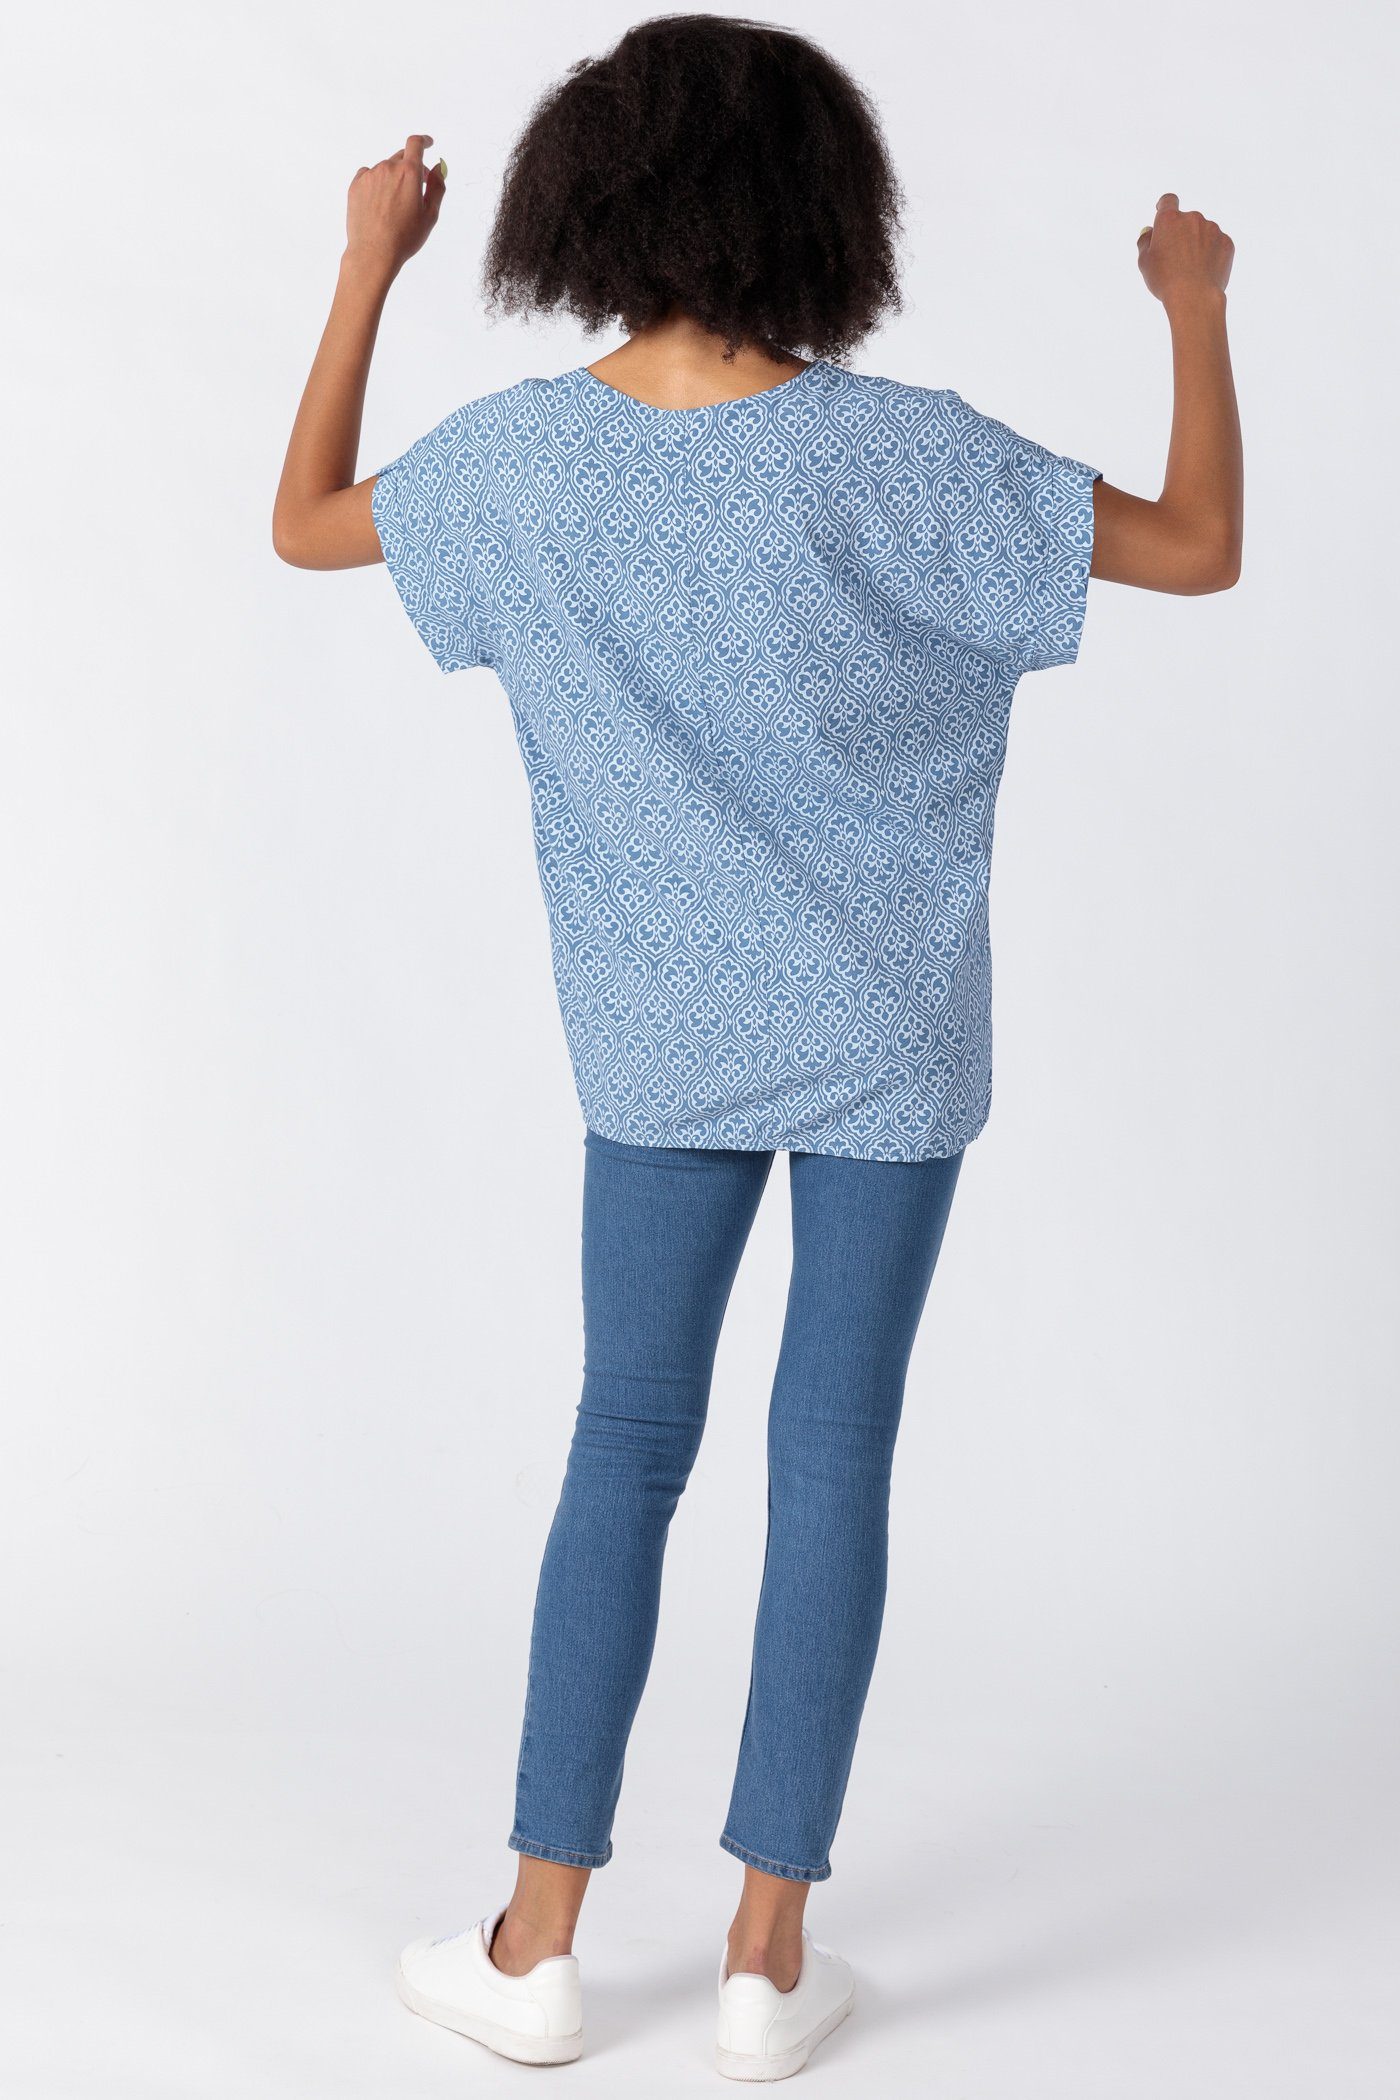 Kurzarm Schlupfbluse mit überschnittener Shirtbluse Damen jeansblau Viskose Schulter PEKIVESSA aus